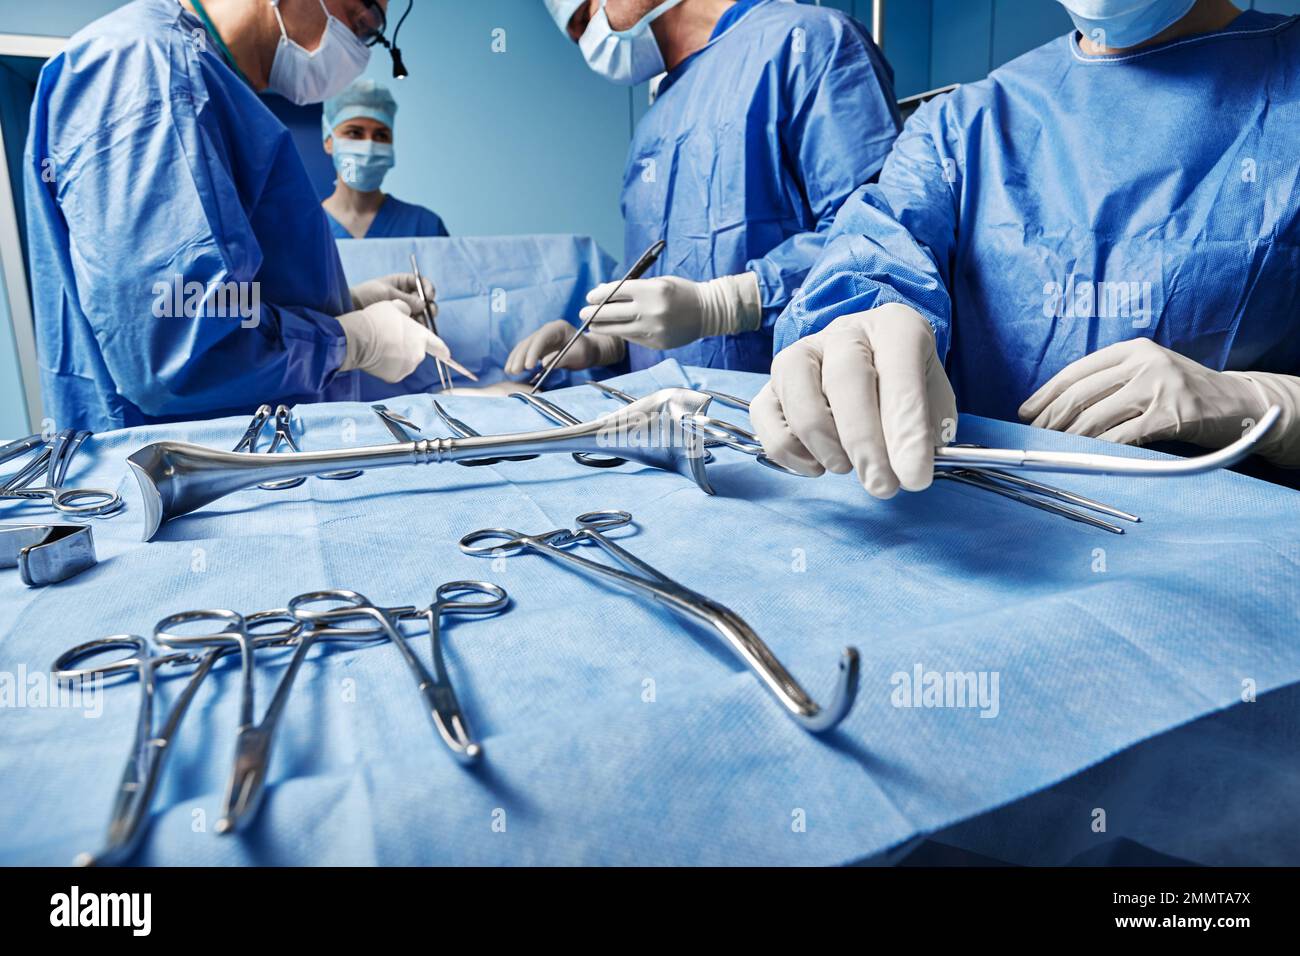 Équipe chirurgicale. Infirmière chirurgicale donnant des ciseaux chirurgicaux au chirurgien masculin pendant l'opération dans le bloc opératoire Banque D'Images